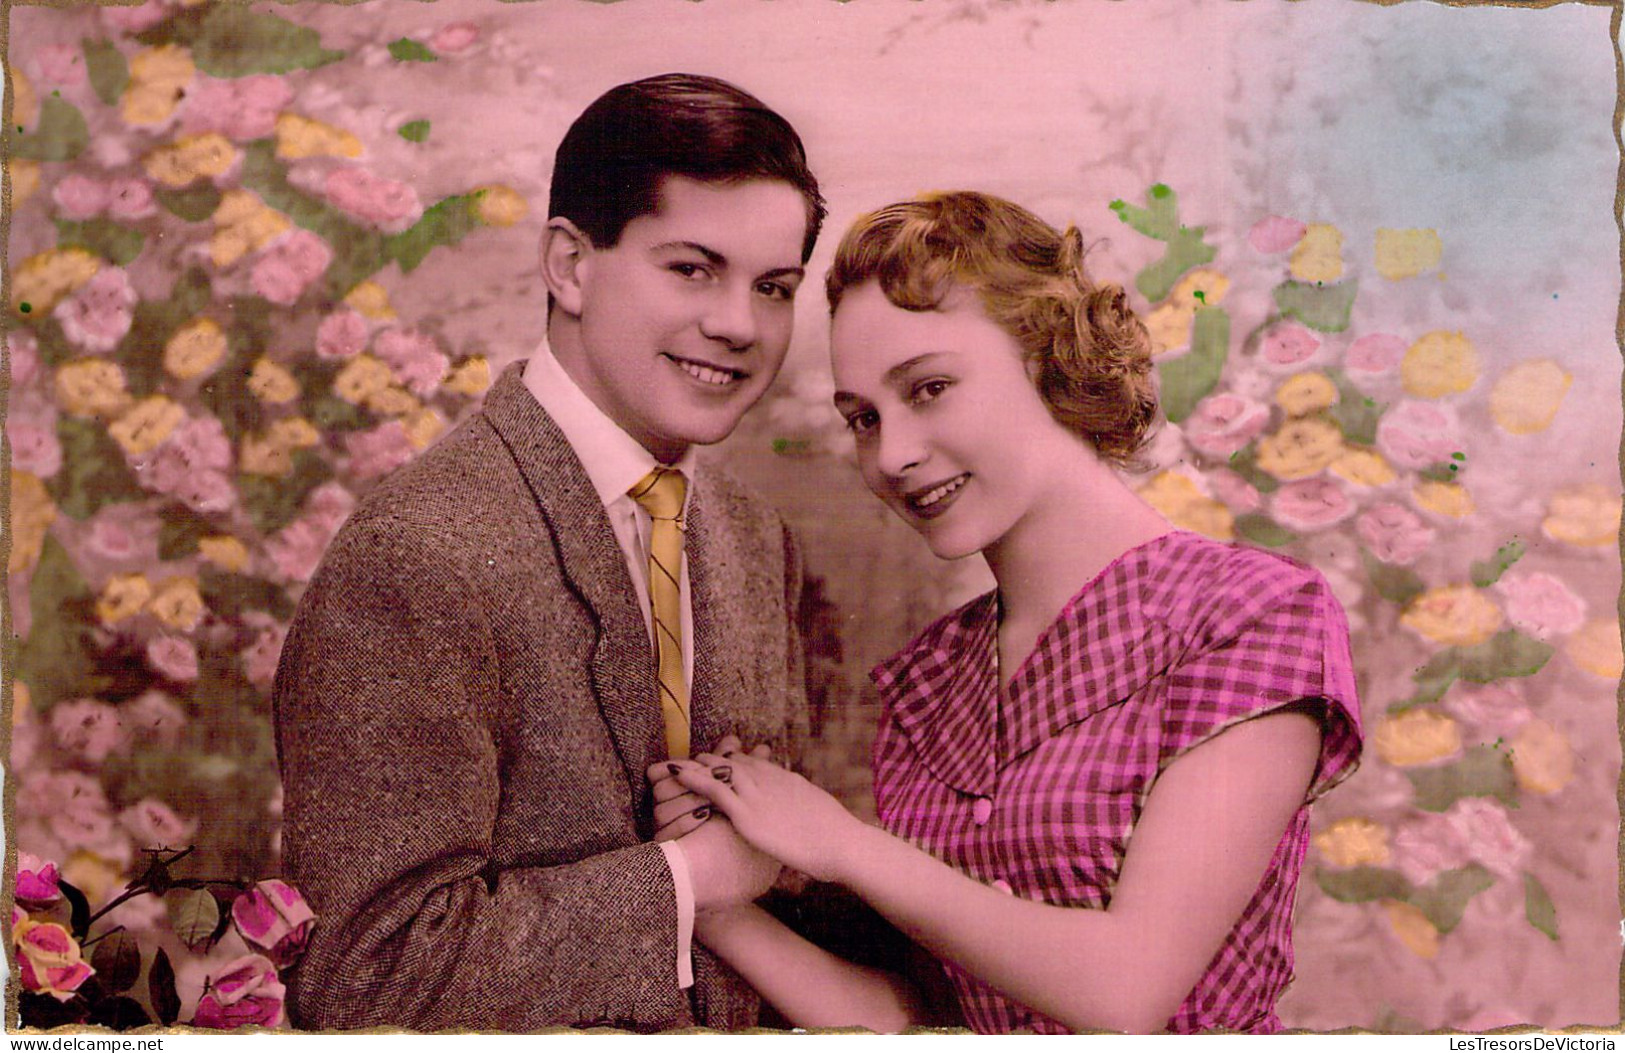 COUPLE - Homme Brun En Cravate Jaune Et Femme Au Chemisier Rose à Carreau - Carte Postale Ancienne - Paare